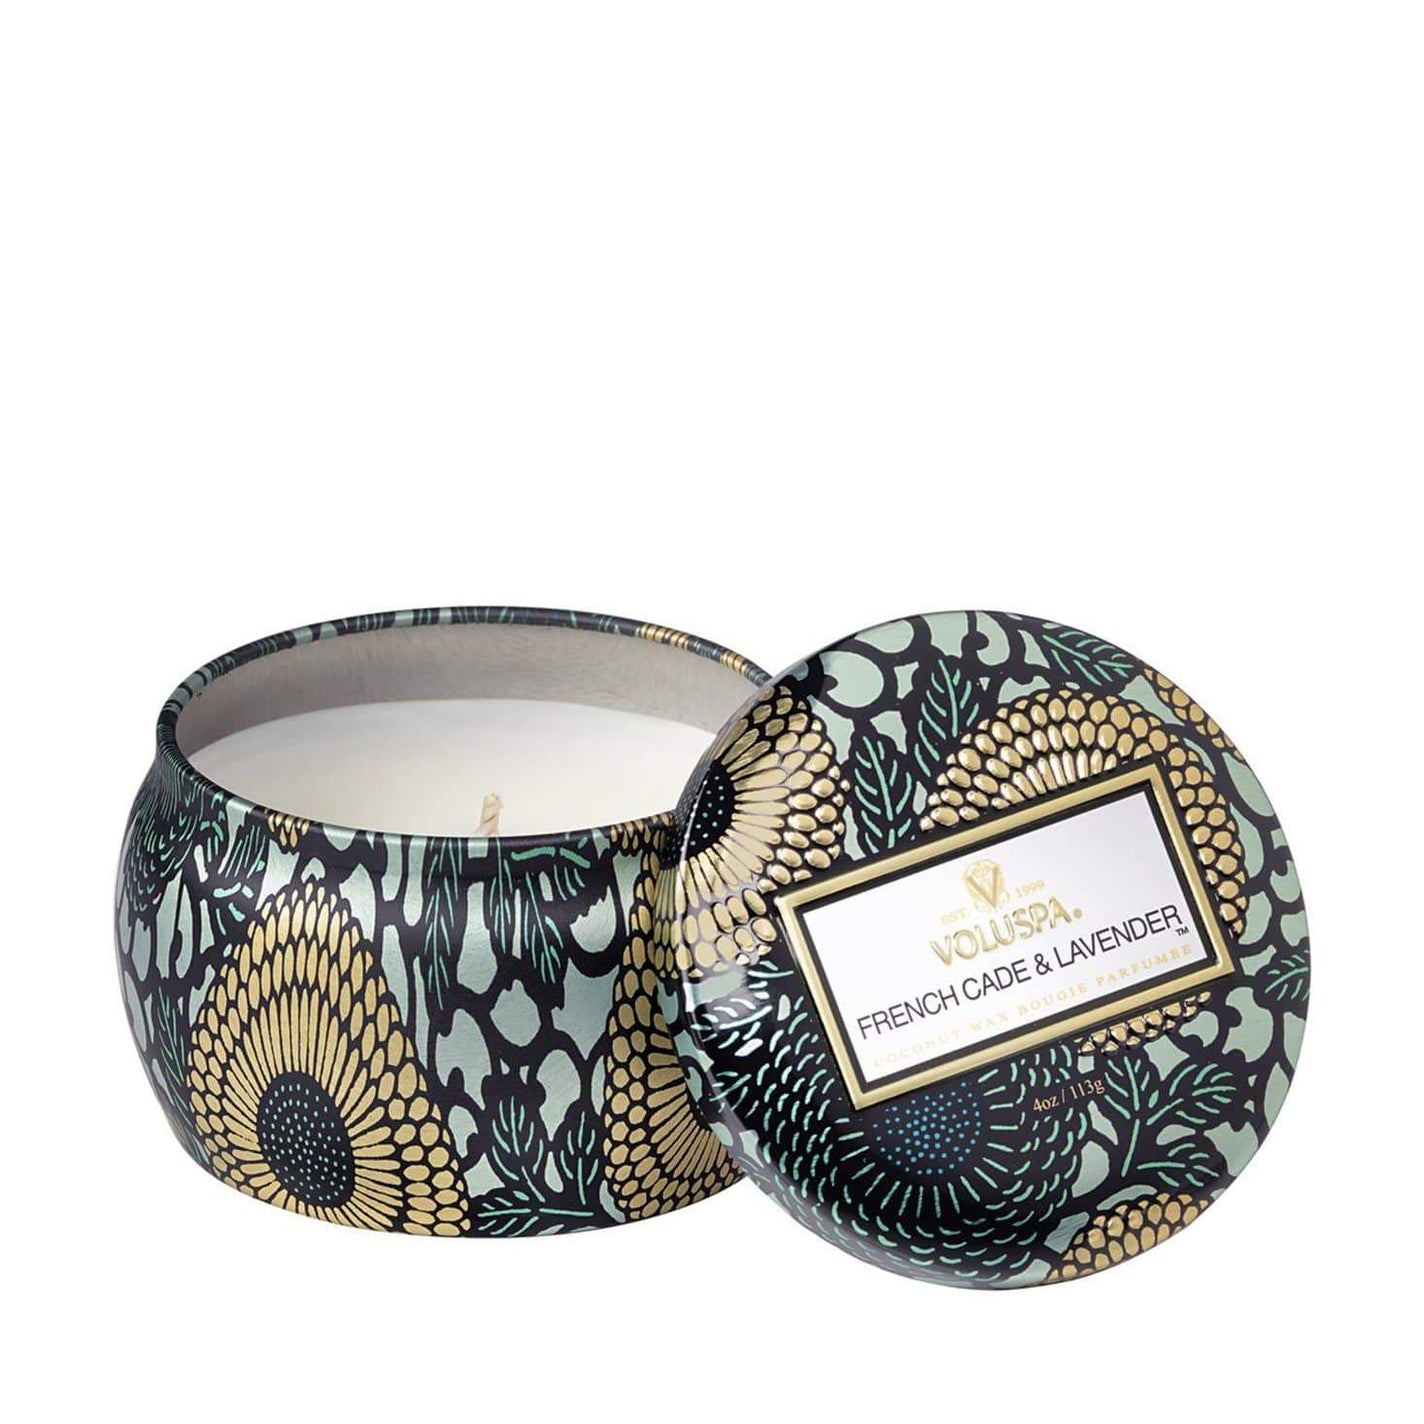 VOLUSPA French Cade & Lavender Decorative Candle